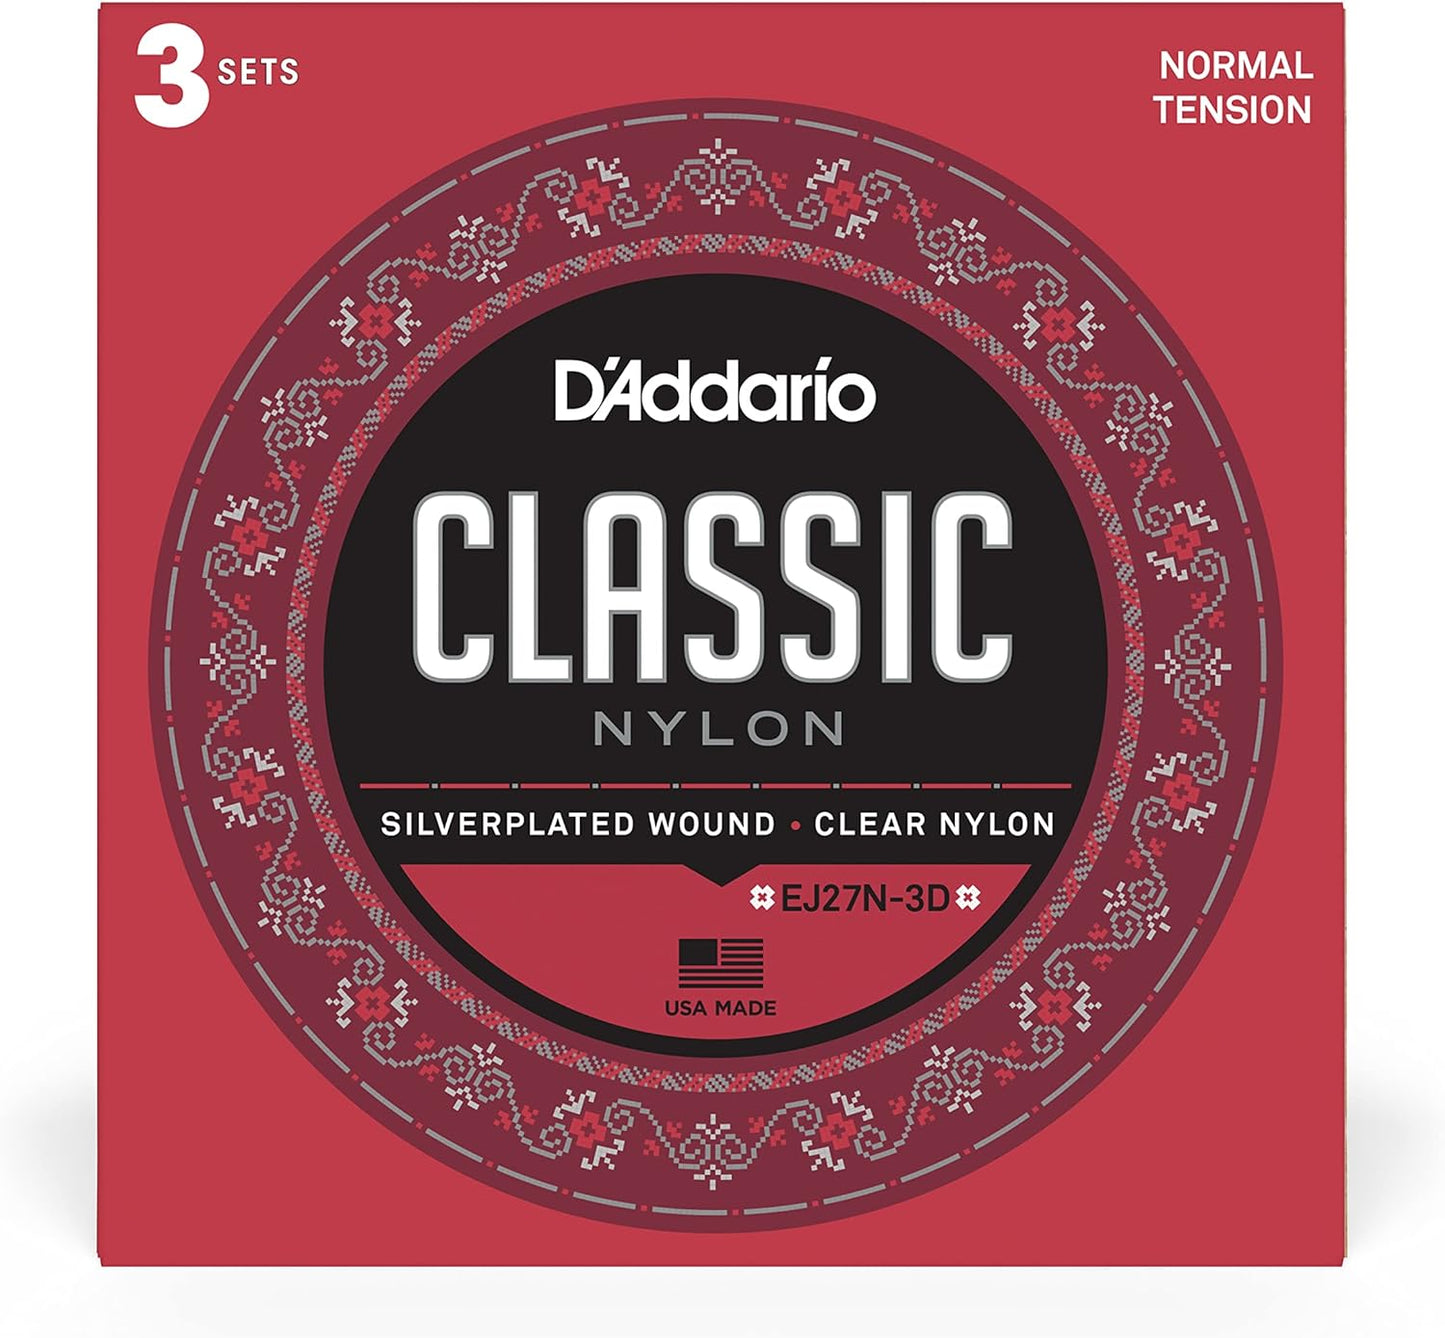 D'Addario EJ27N-3D 3 Pack Classical Guitar Strings Nylon Normal Tension